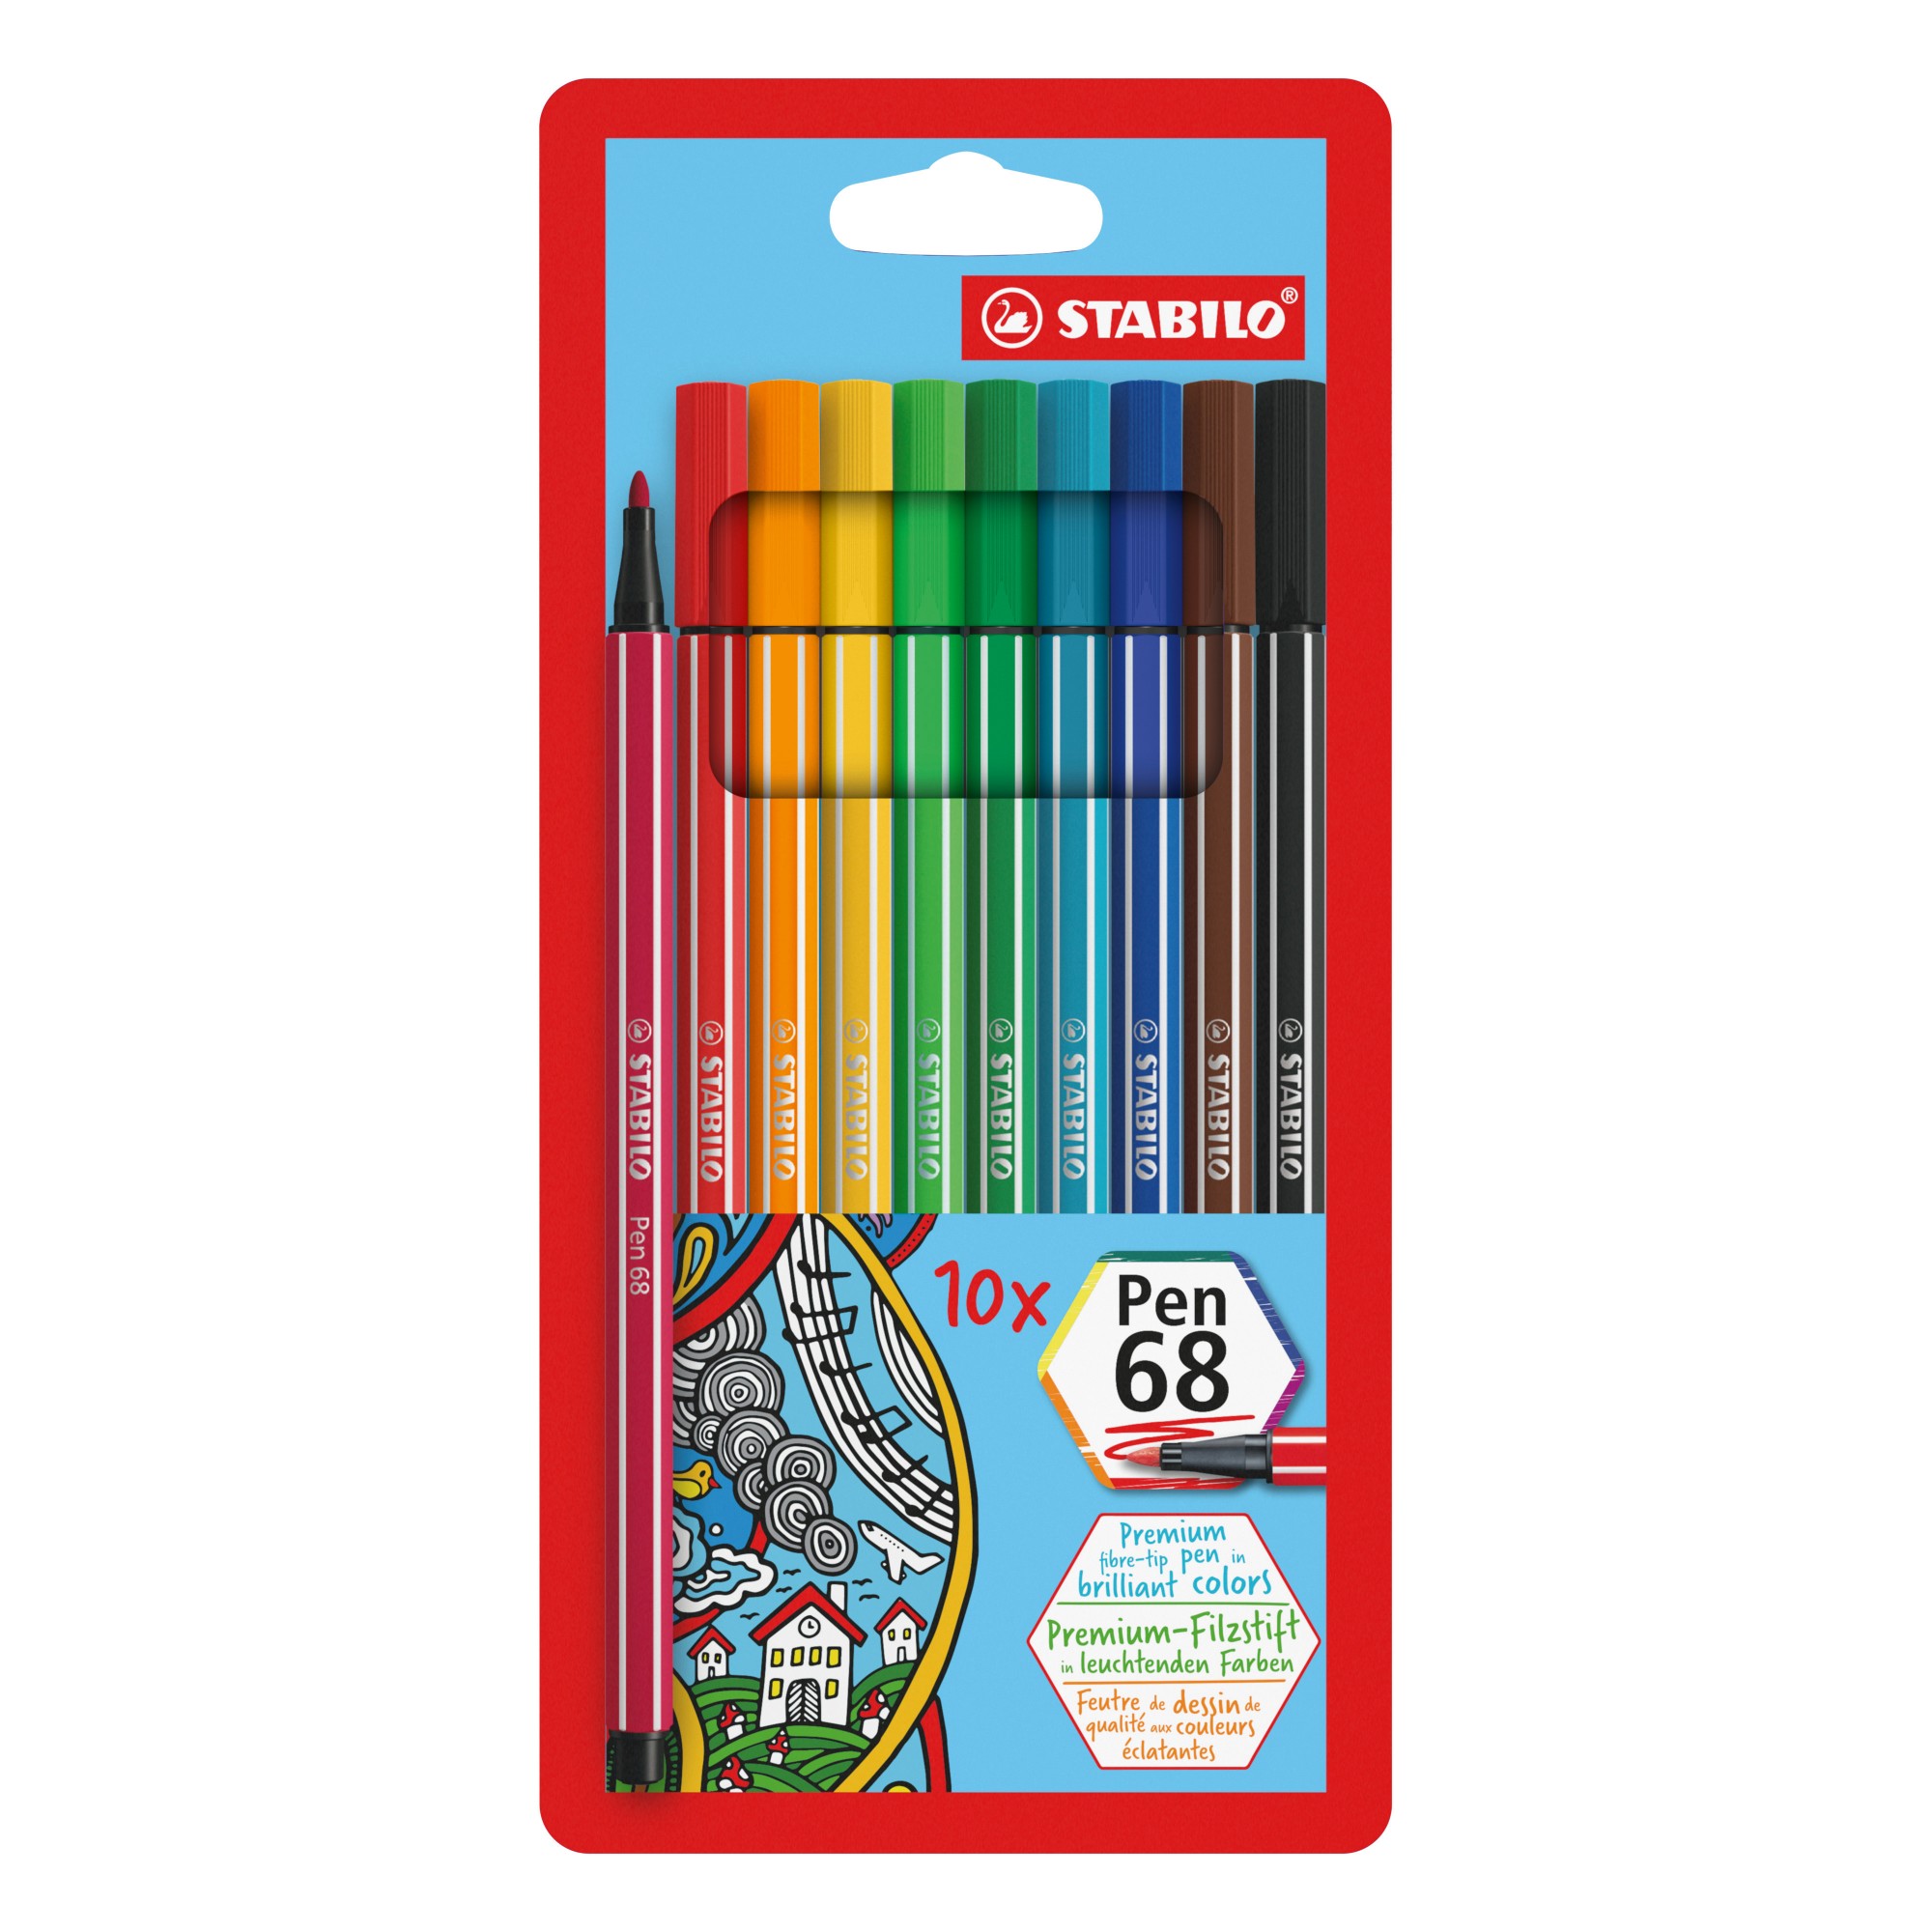 Photos - Felt Tip Pen STABILO Pen 68 felt pen Multicolour 10 pc(s) 6810/PL 